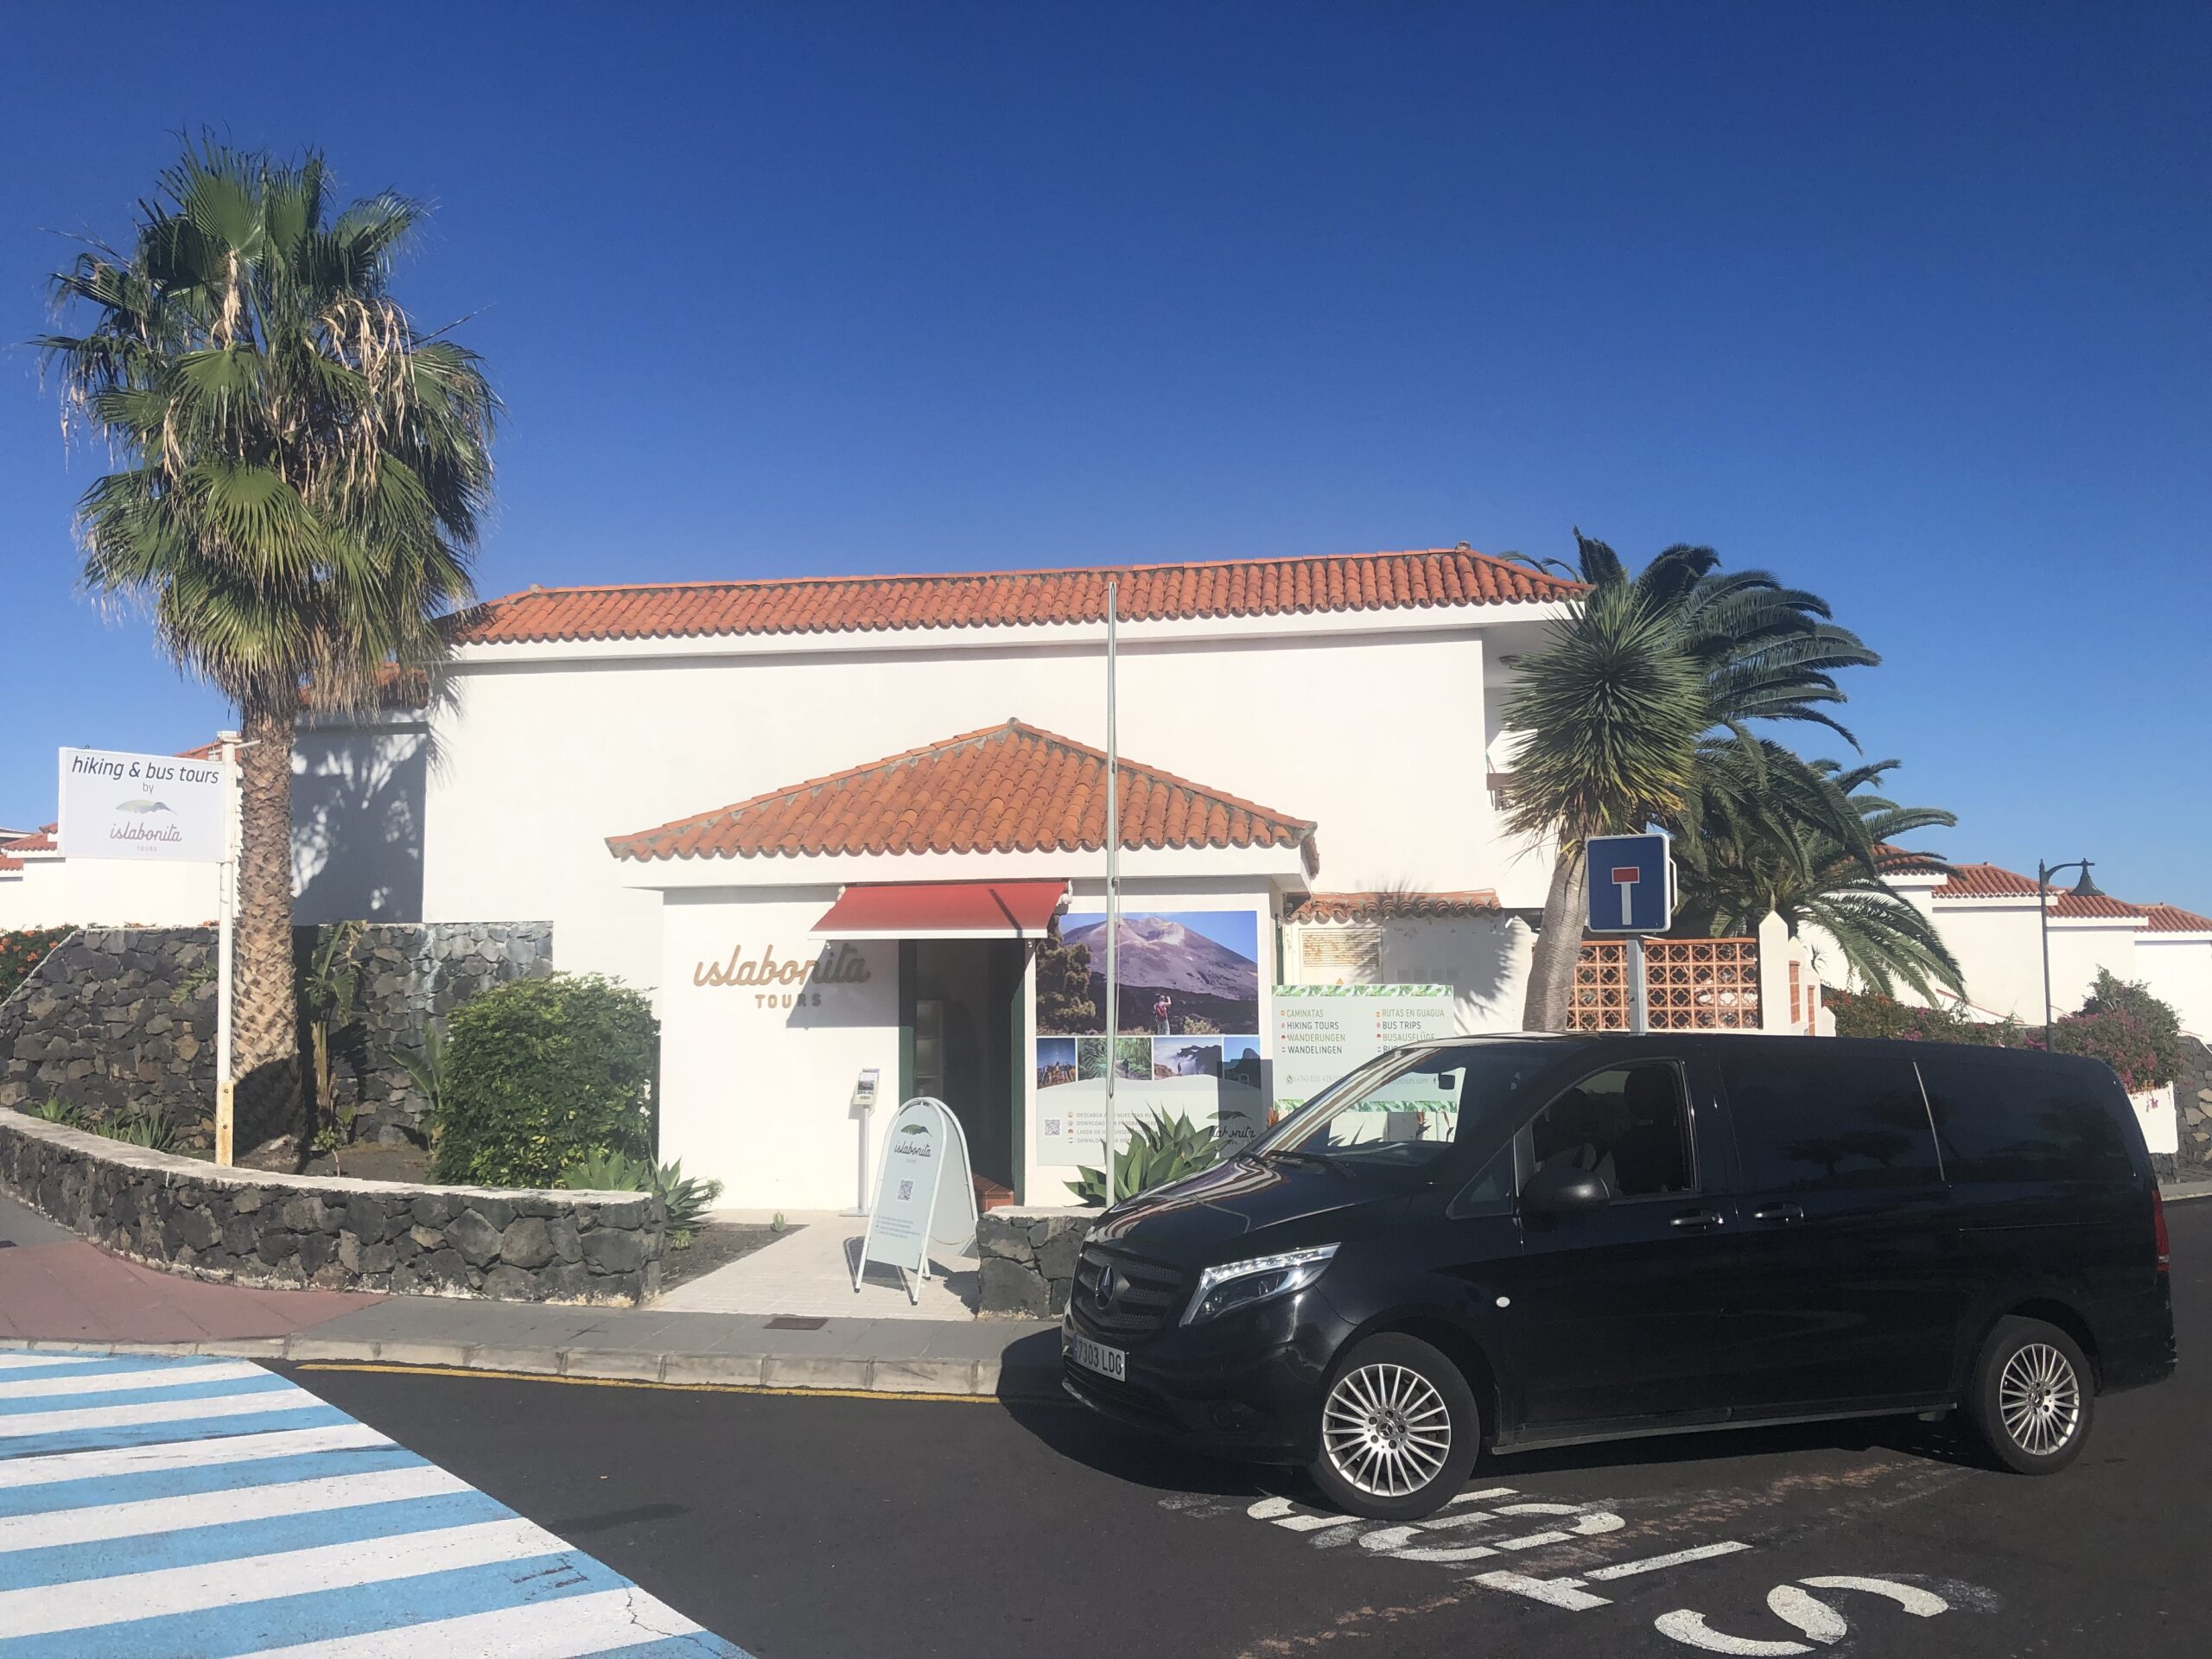 oficina isla bonita tours, excursiones y transporte en La Palma